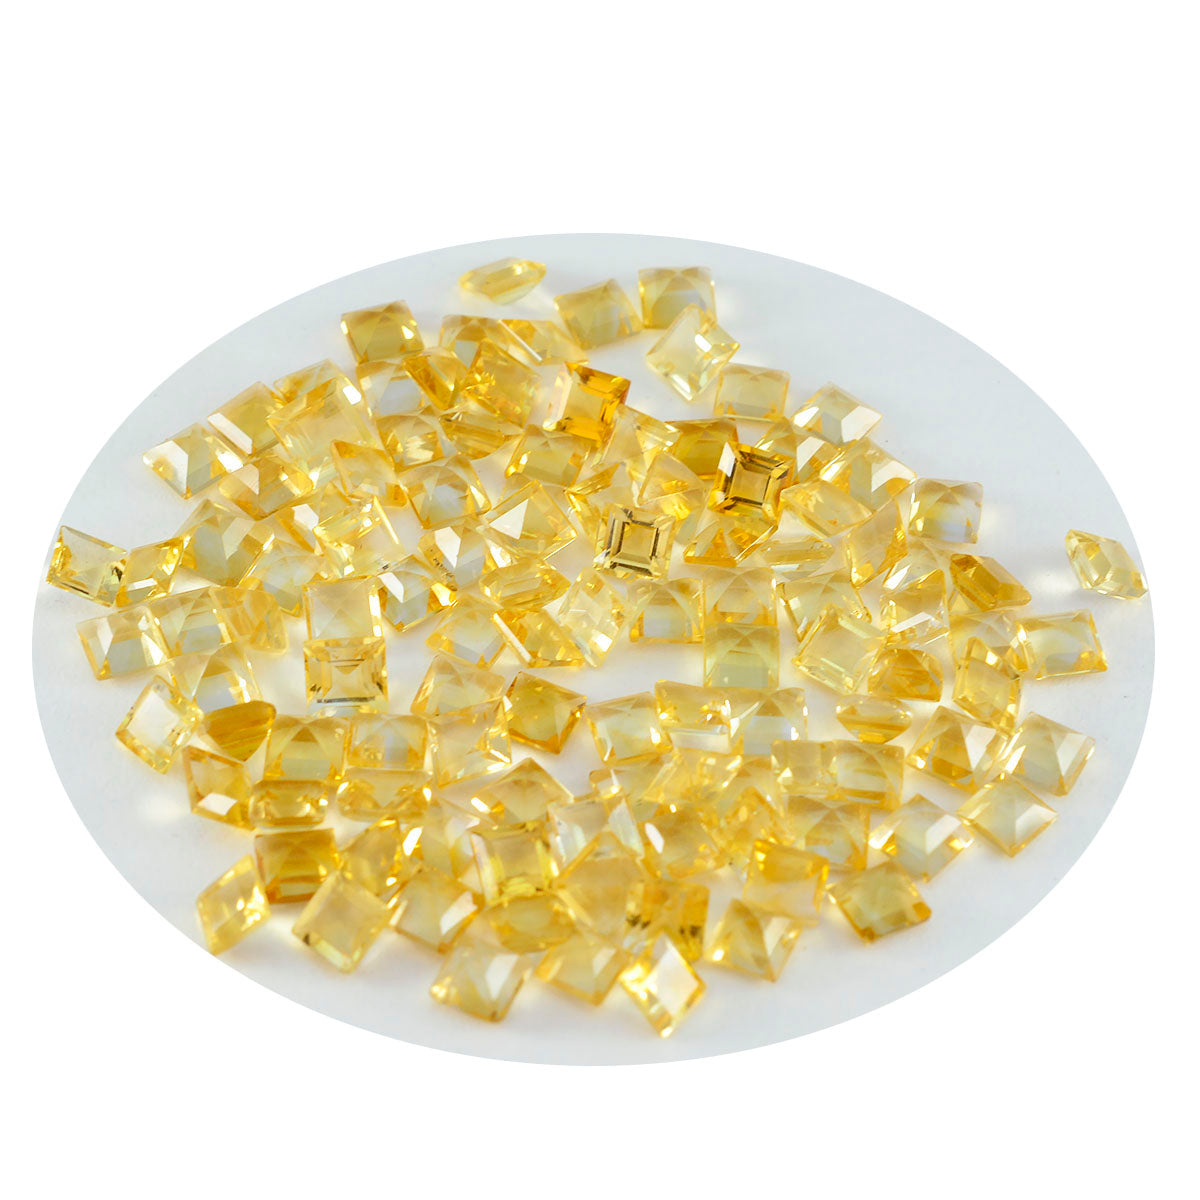 Riyogems, 1 unidad, citrino amarillo auténtico facetado, 7x7mm, forma cuadrada, gema suelta de buena calidad